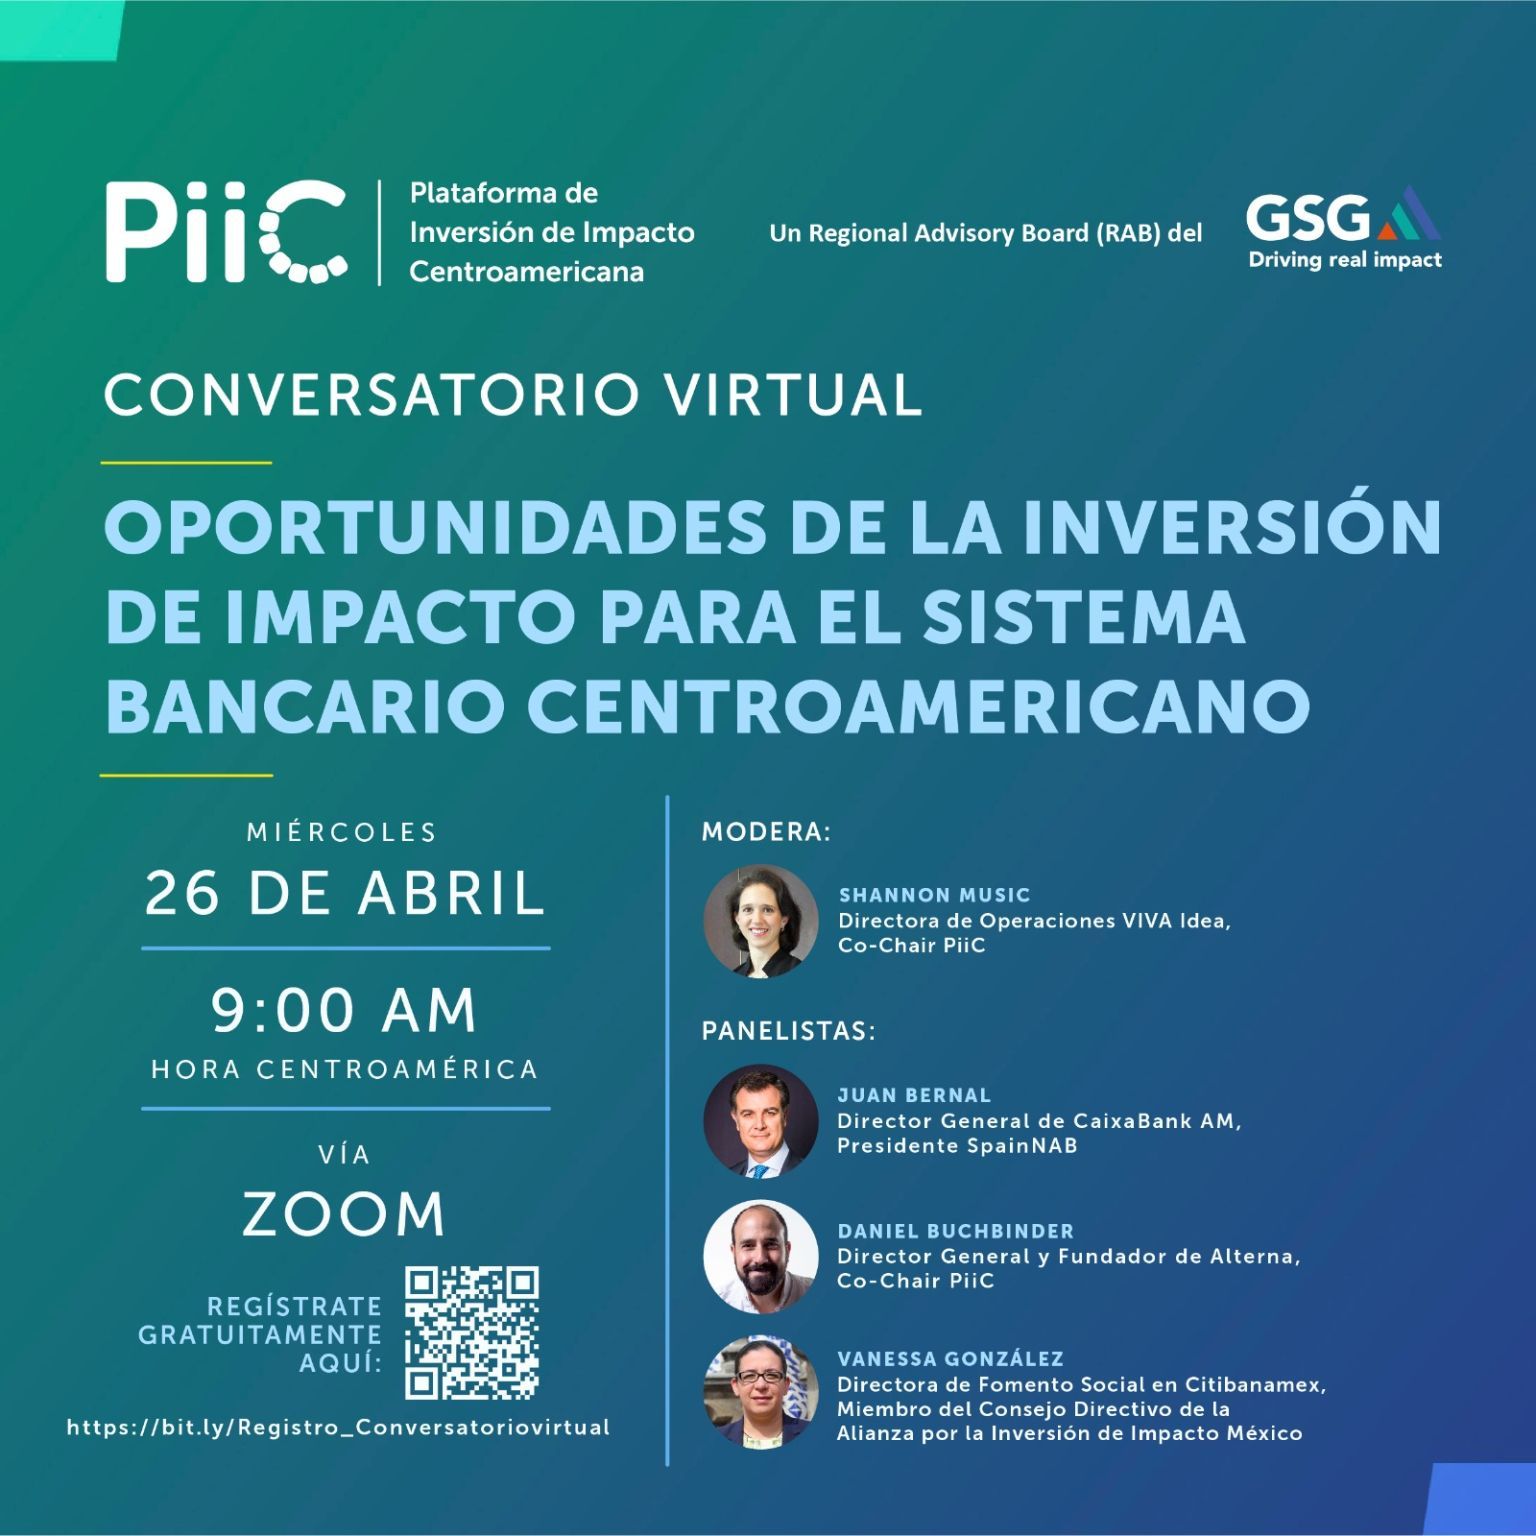 Conversatorio virtual: Oportunidades de la Inversión de Impacto para el Sistema Bancario Centroamericano